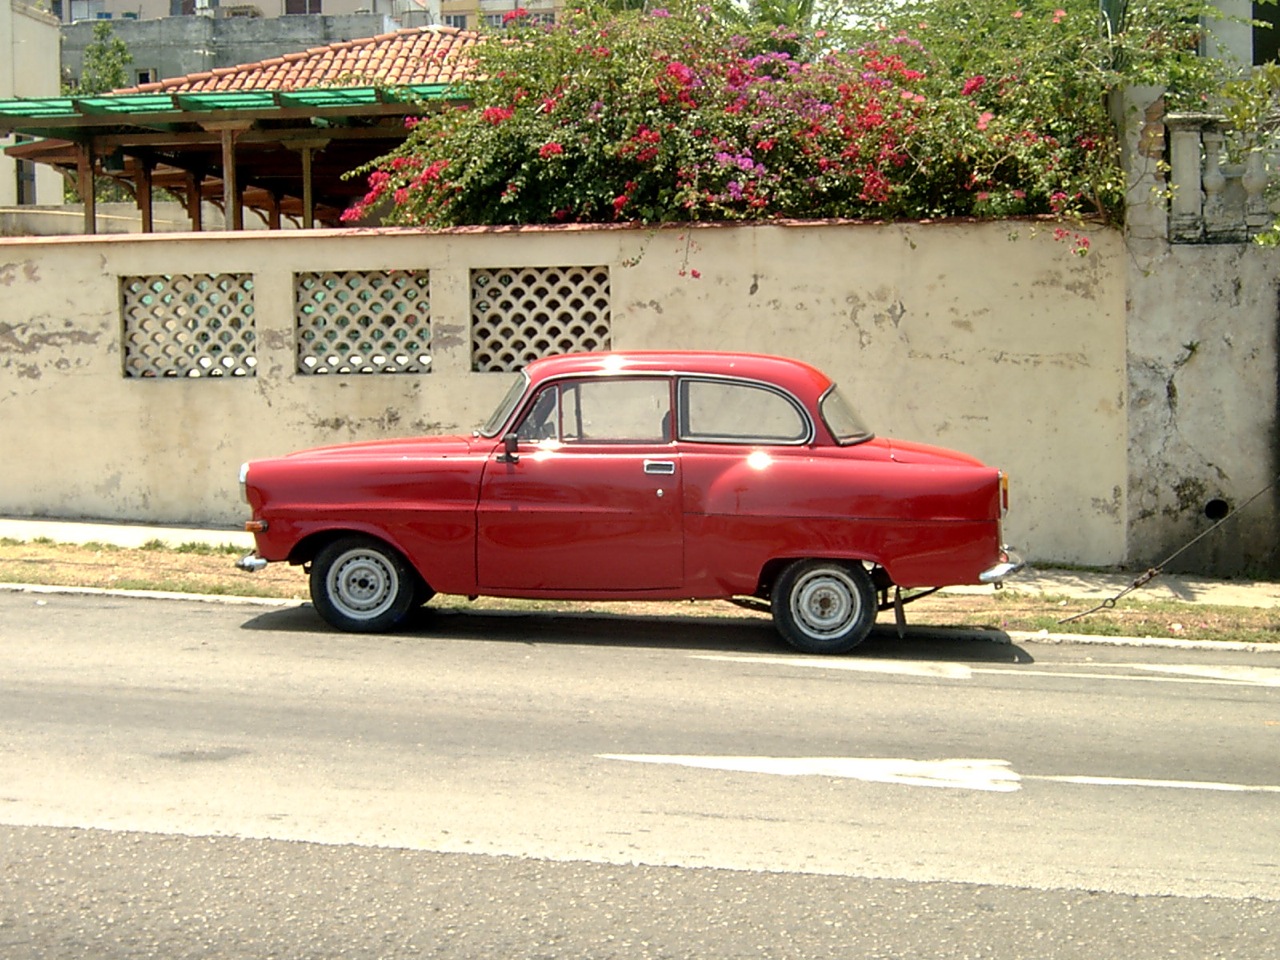 auto cubano